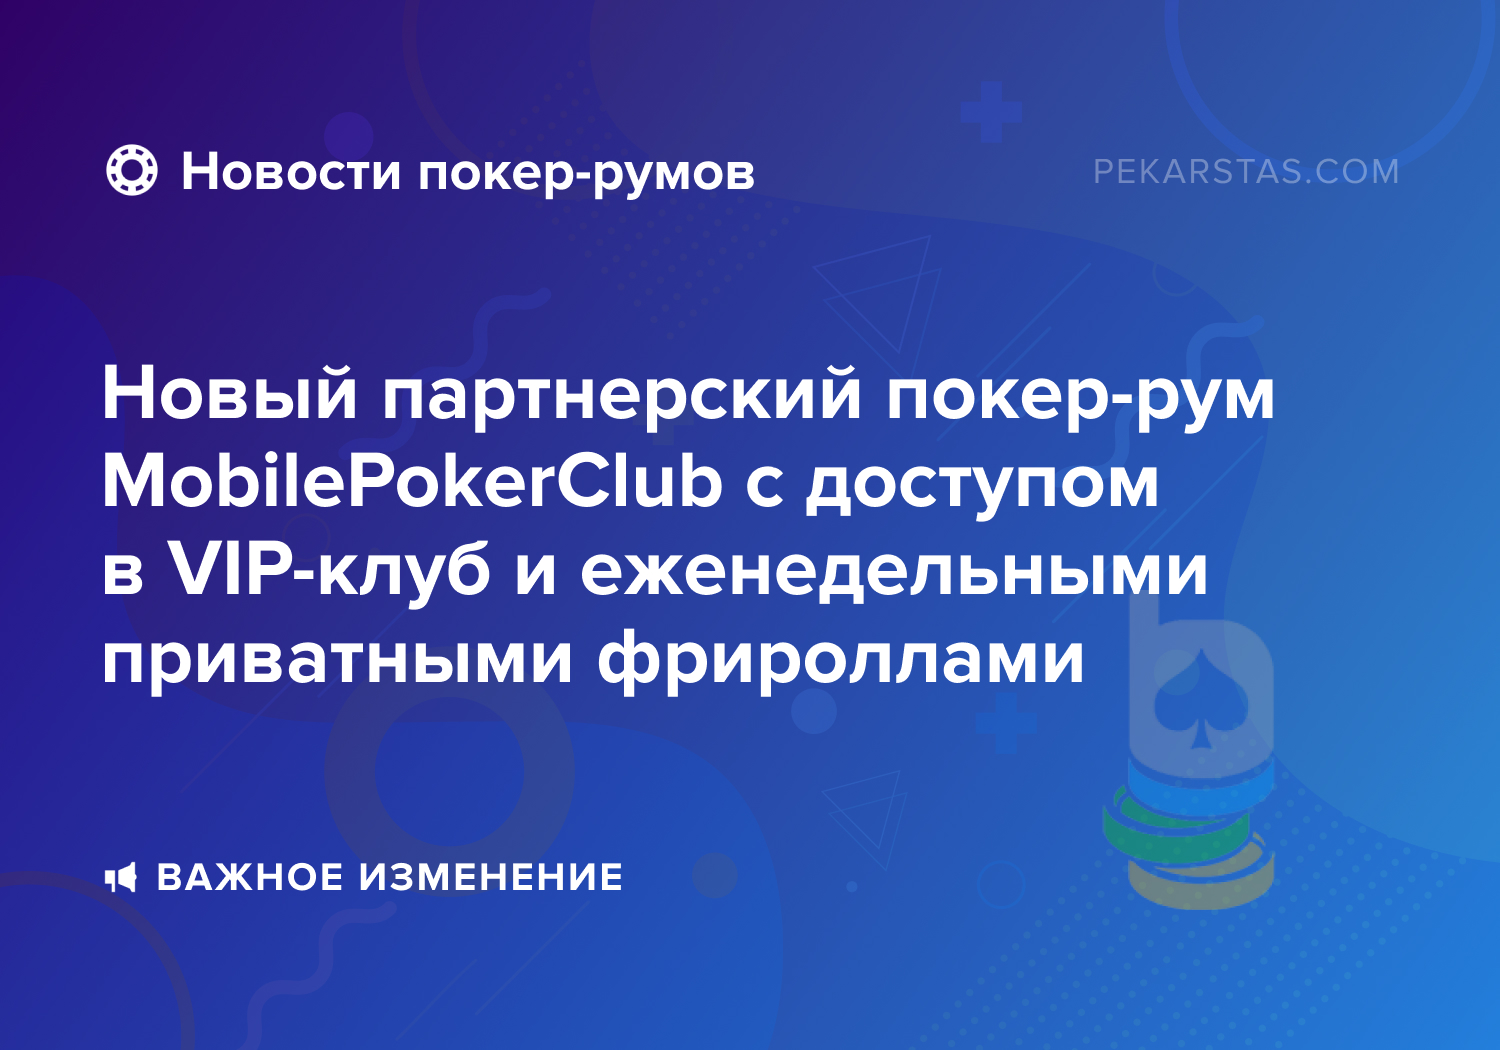 Новый партнерский покер-рум MobilePokerClub